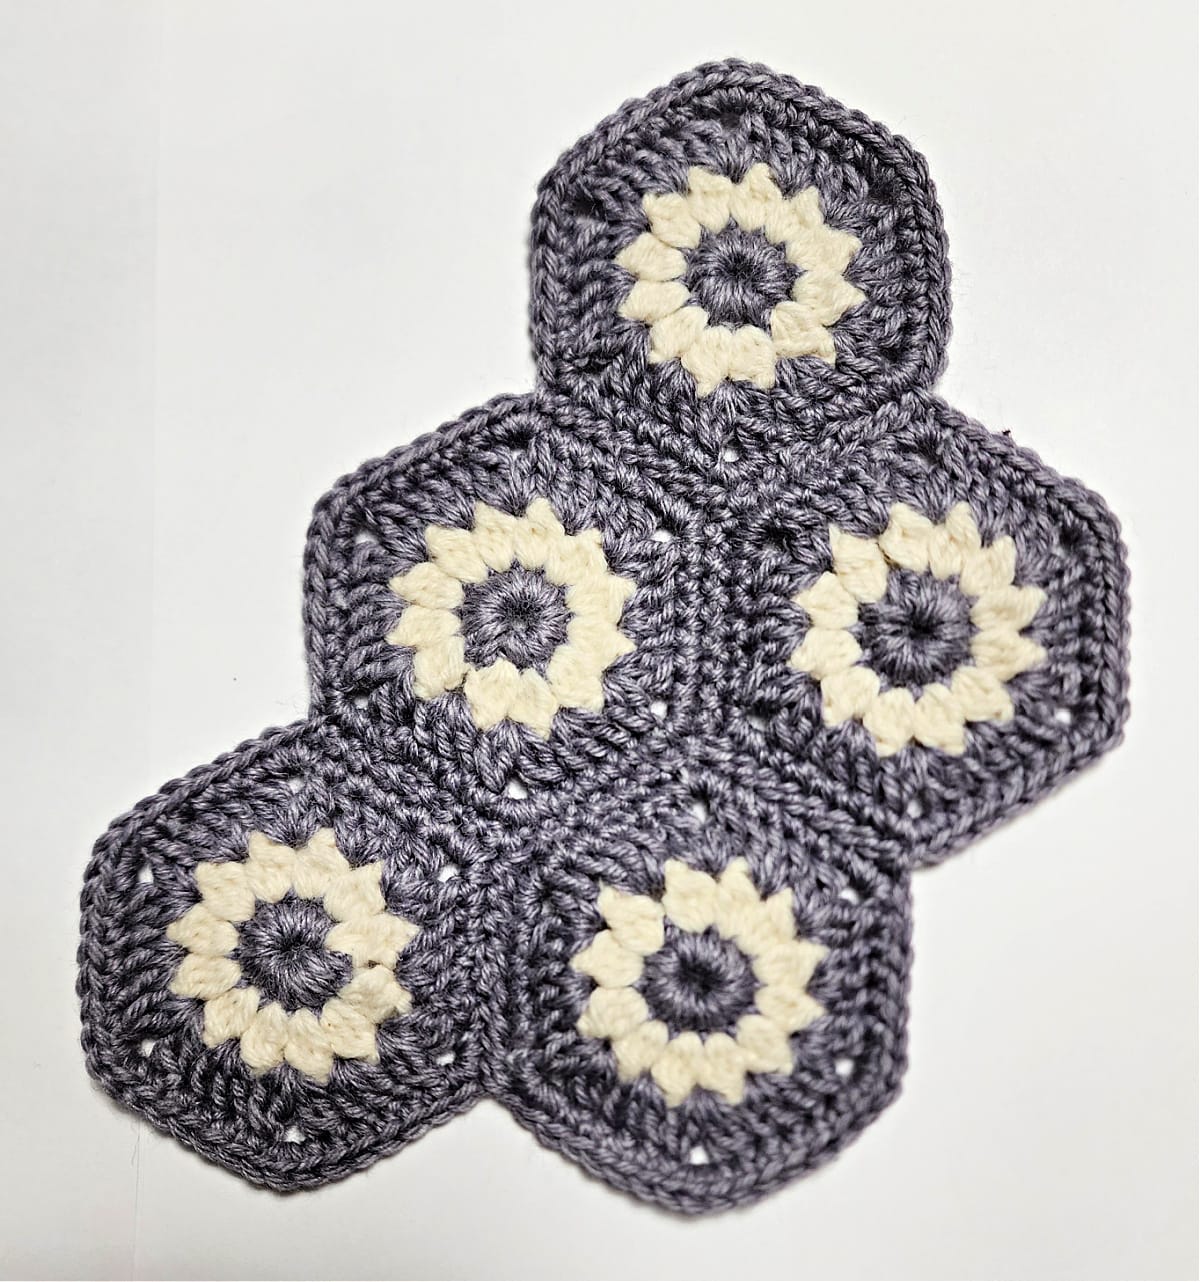 All five crochet hexagon motifs joined.